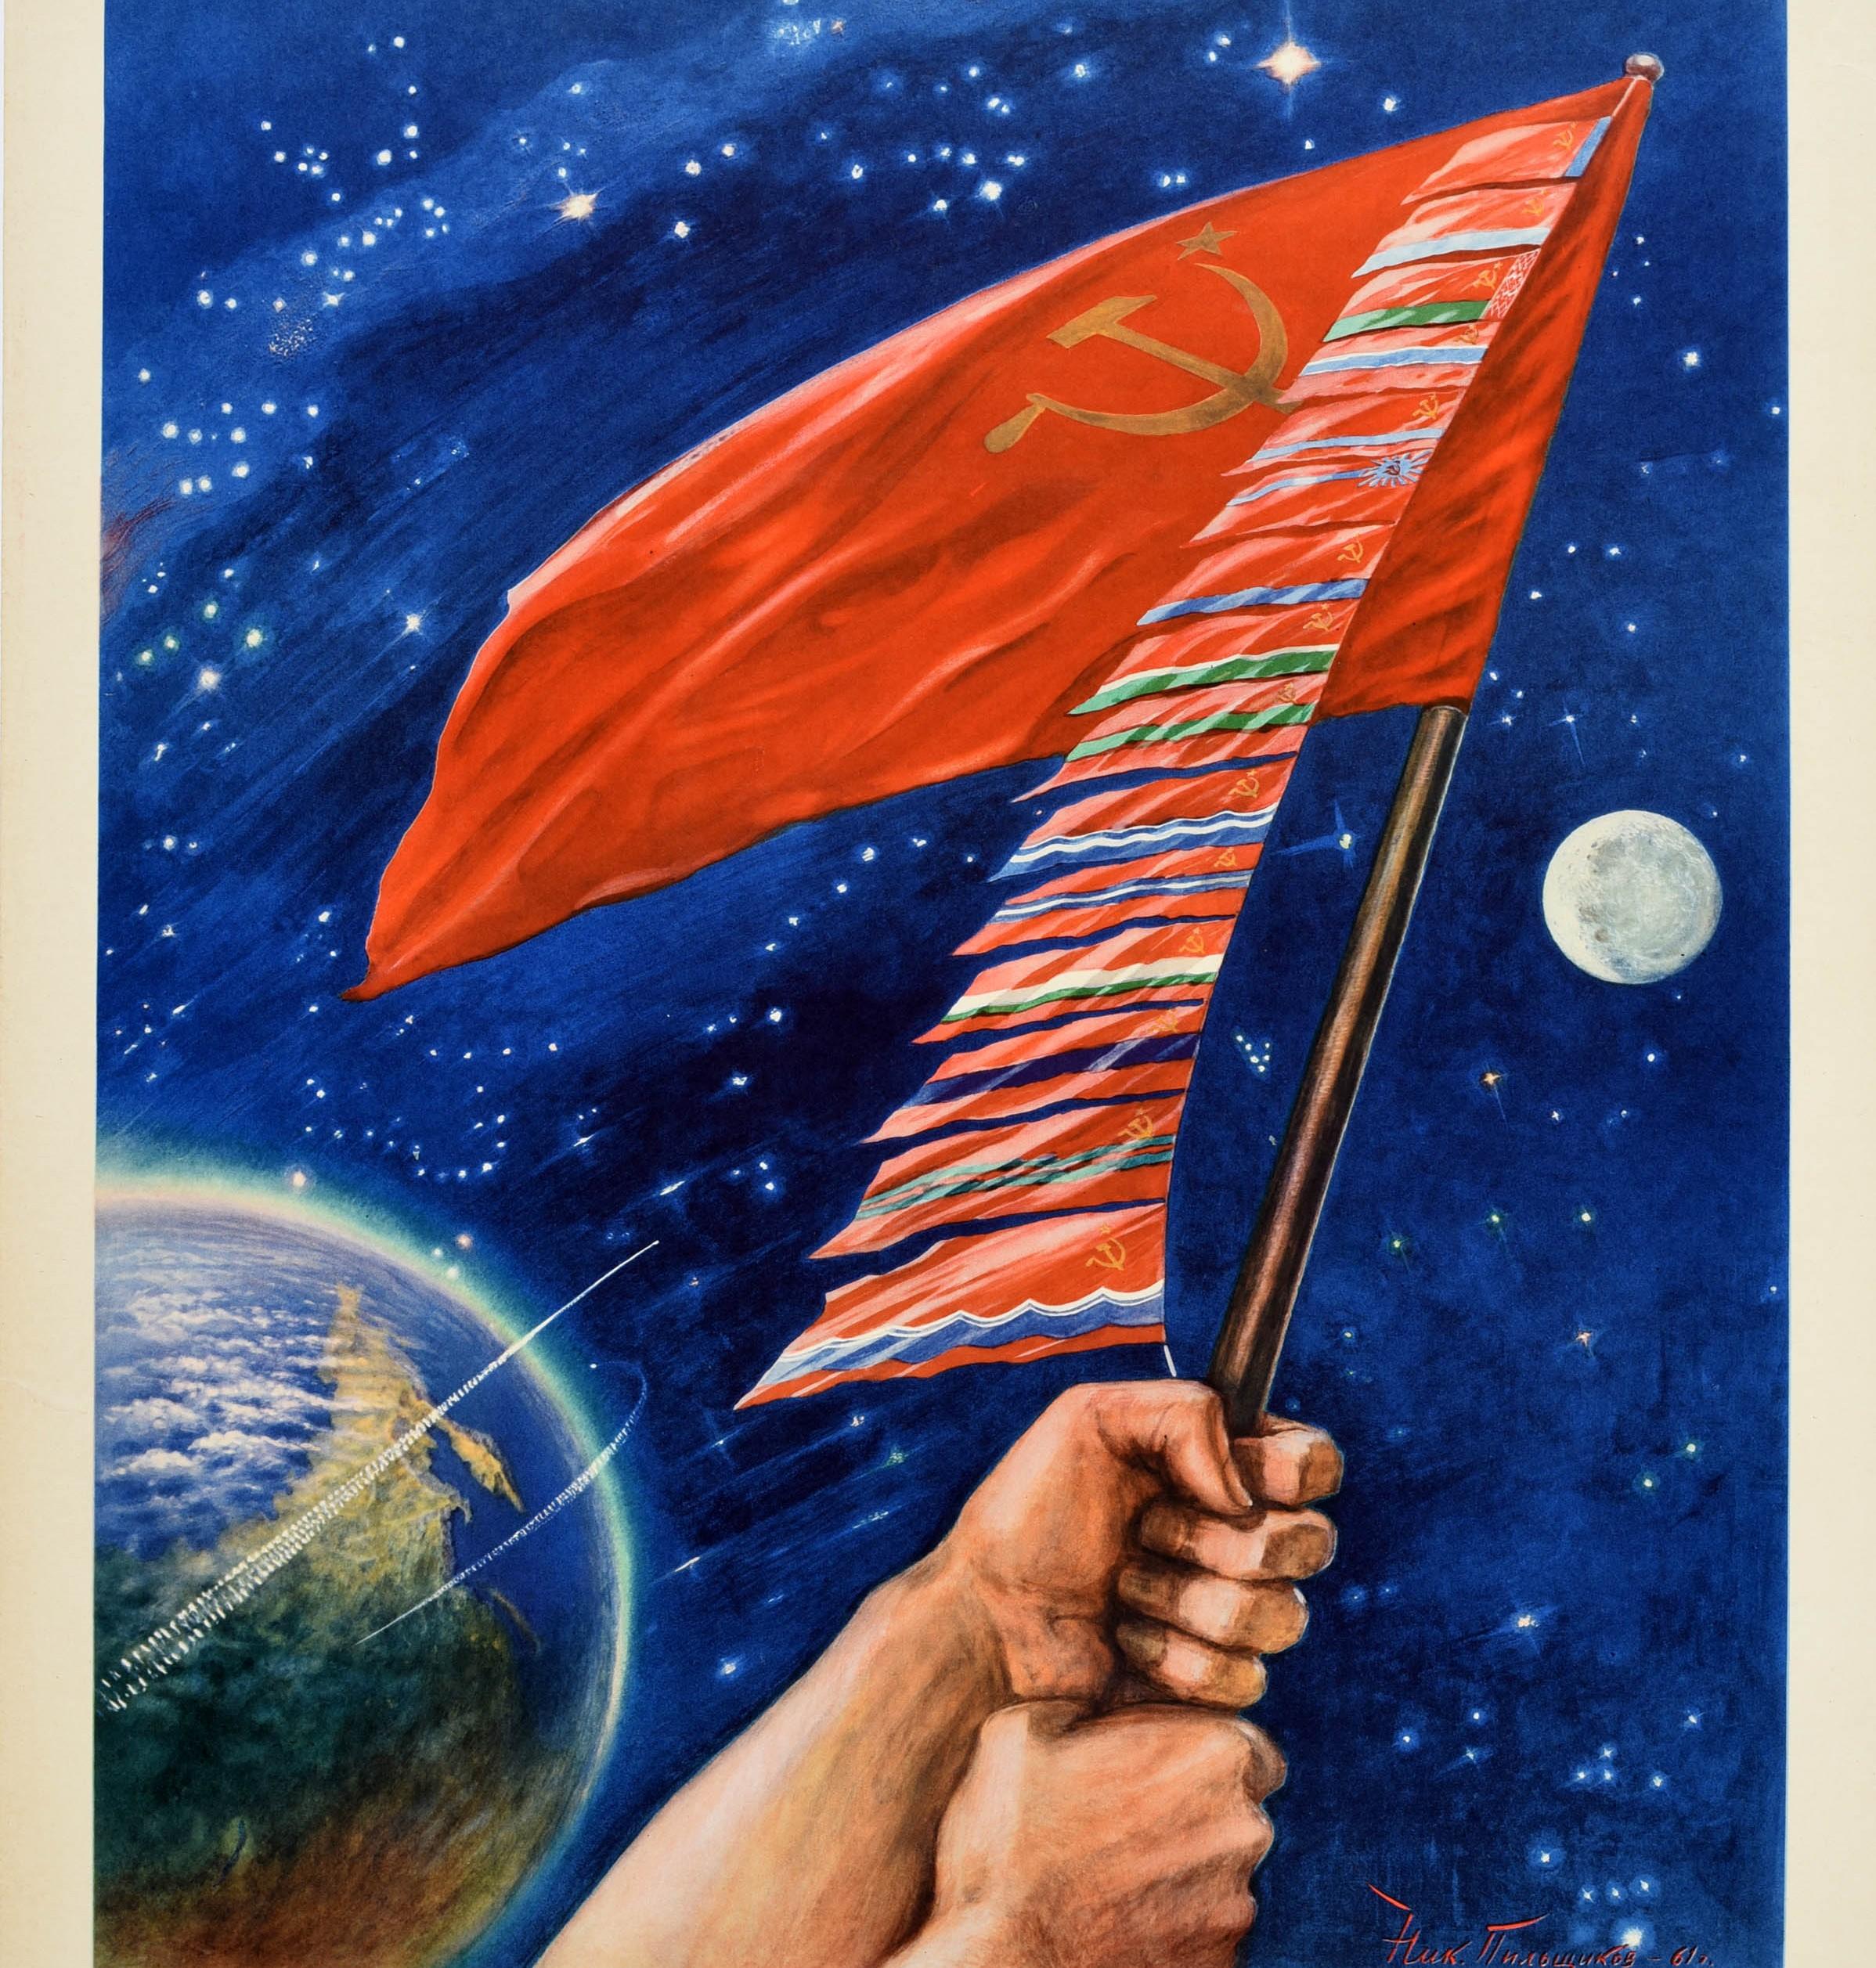 Affiche originale de propagande spatiale soviétique vintage - Navigation dans l'espace ouvert ! / Навигация В Космосе Открыа ! - représentant un vaisseau spatial en orbite autour de la planète Terre avec les mains d'un homme tenant un drapeau rouge